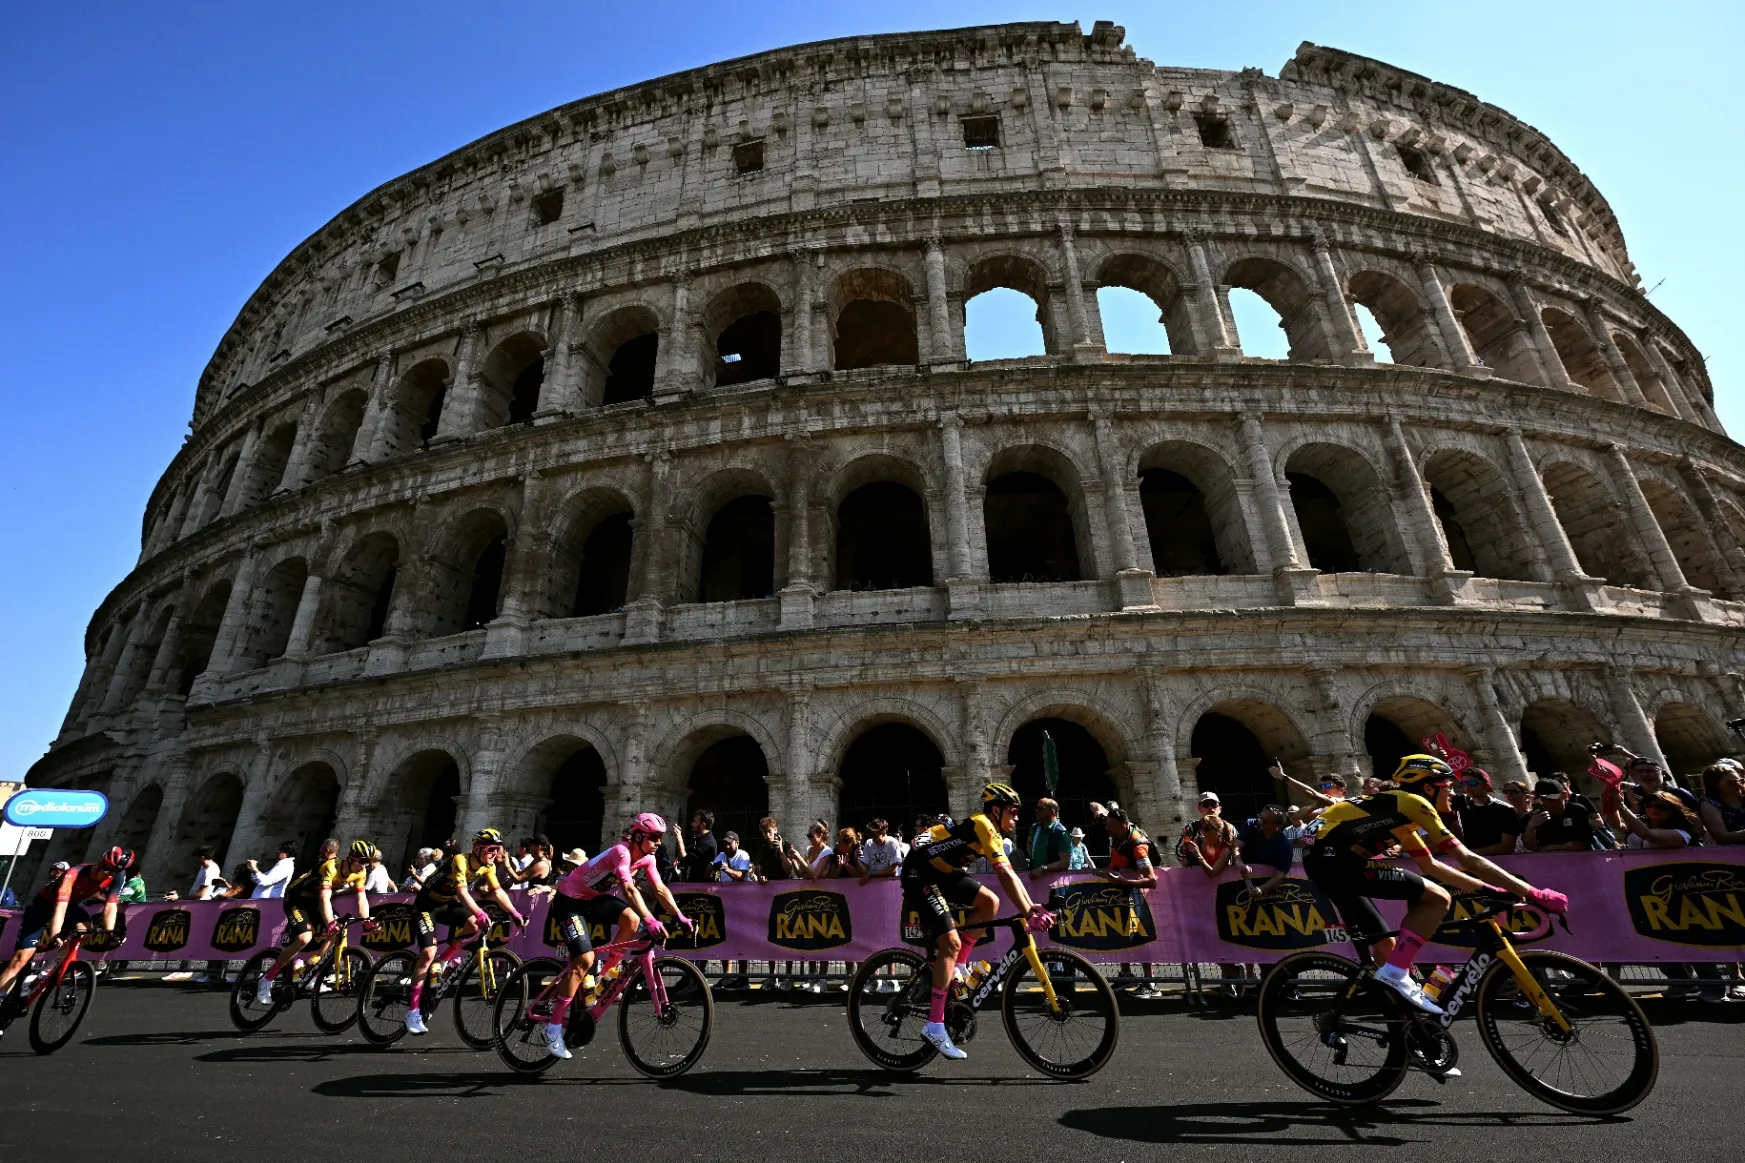 Az óriási dráma után egy meseszerű történettel zárult a Giro d'Italia